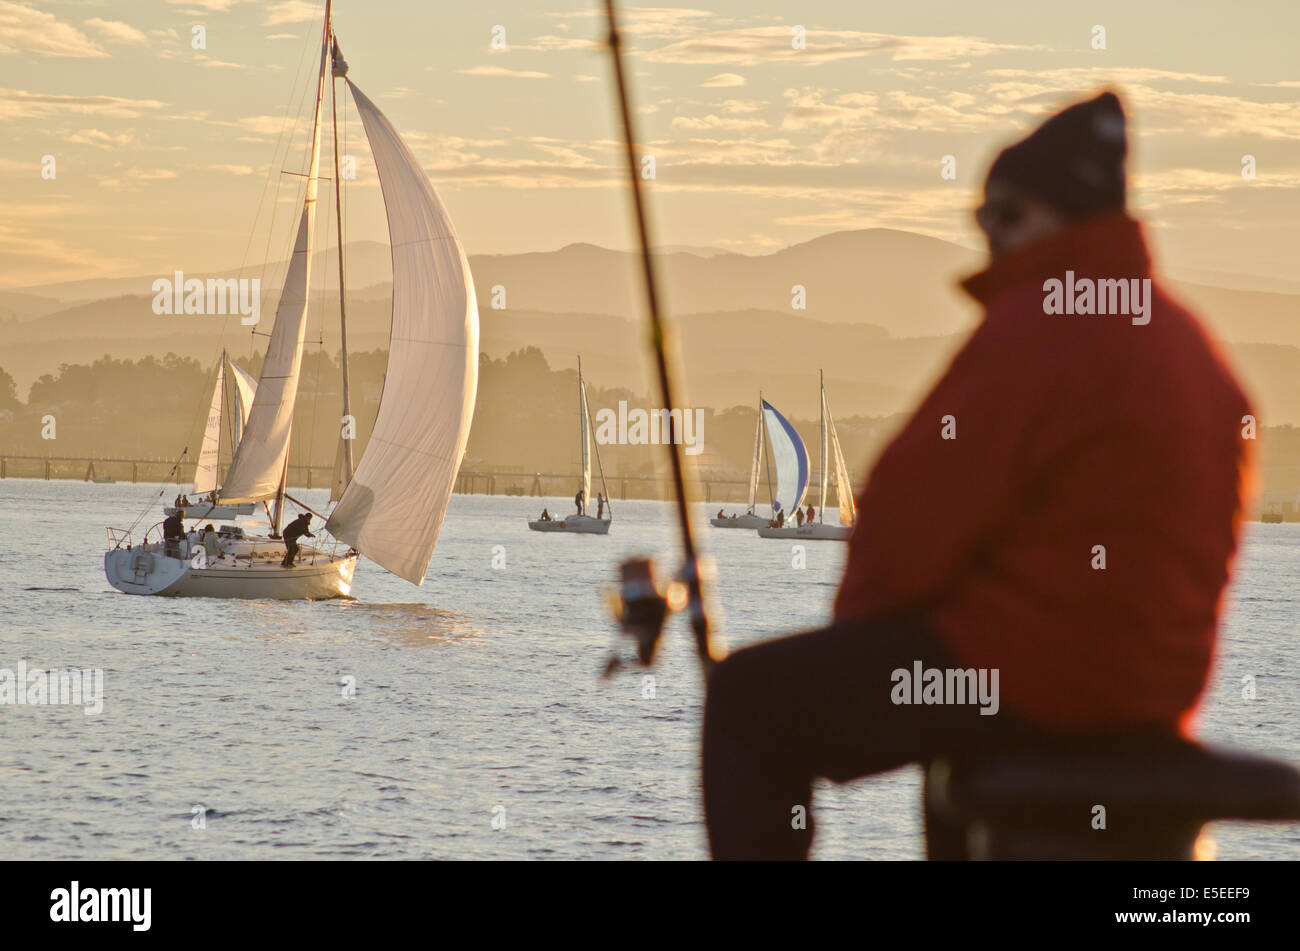 Sailing boats and angler at sunset on Santander bay. Stock Photo